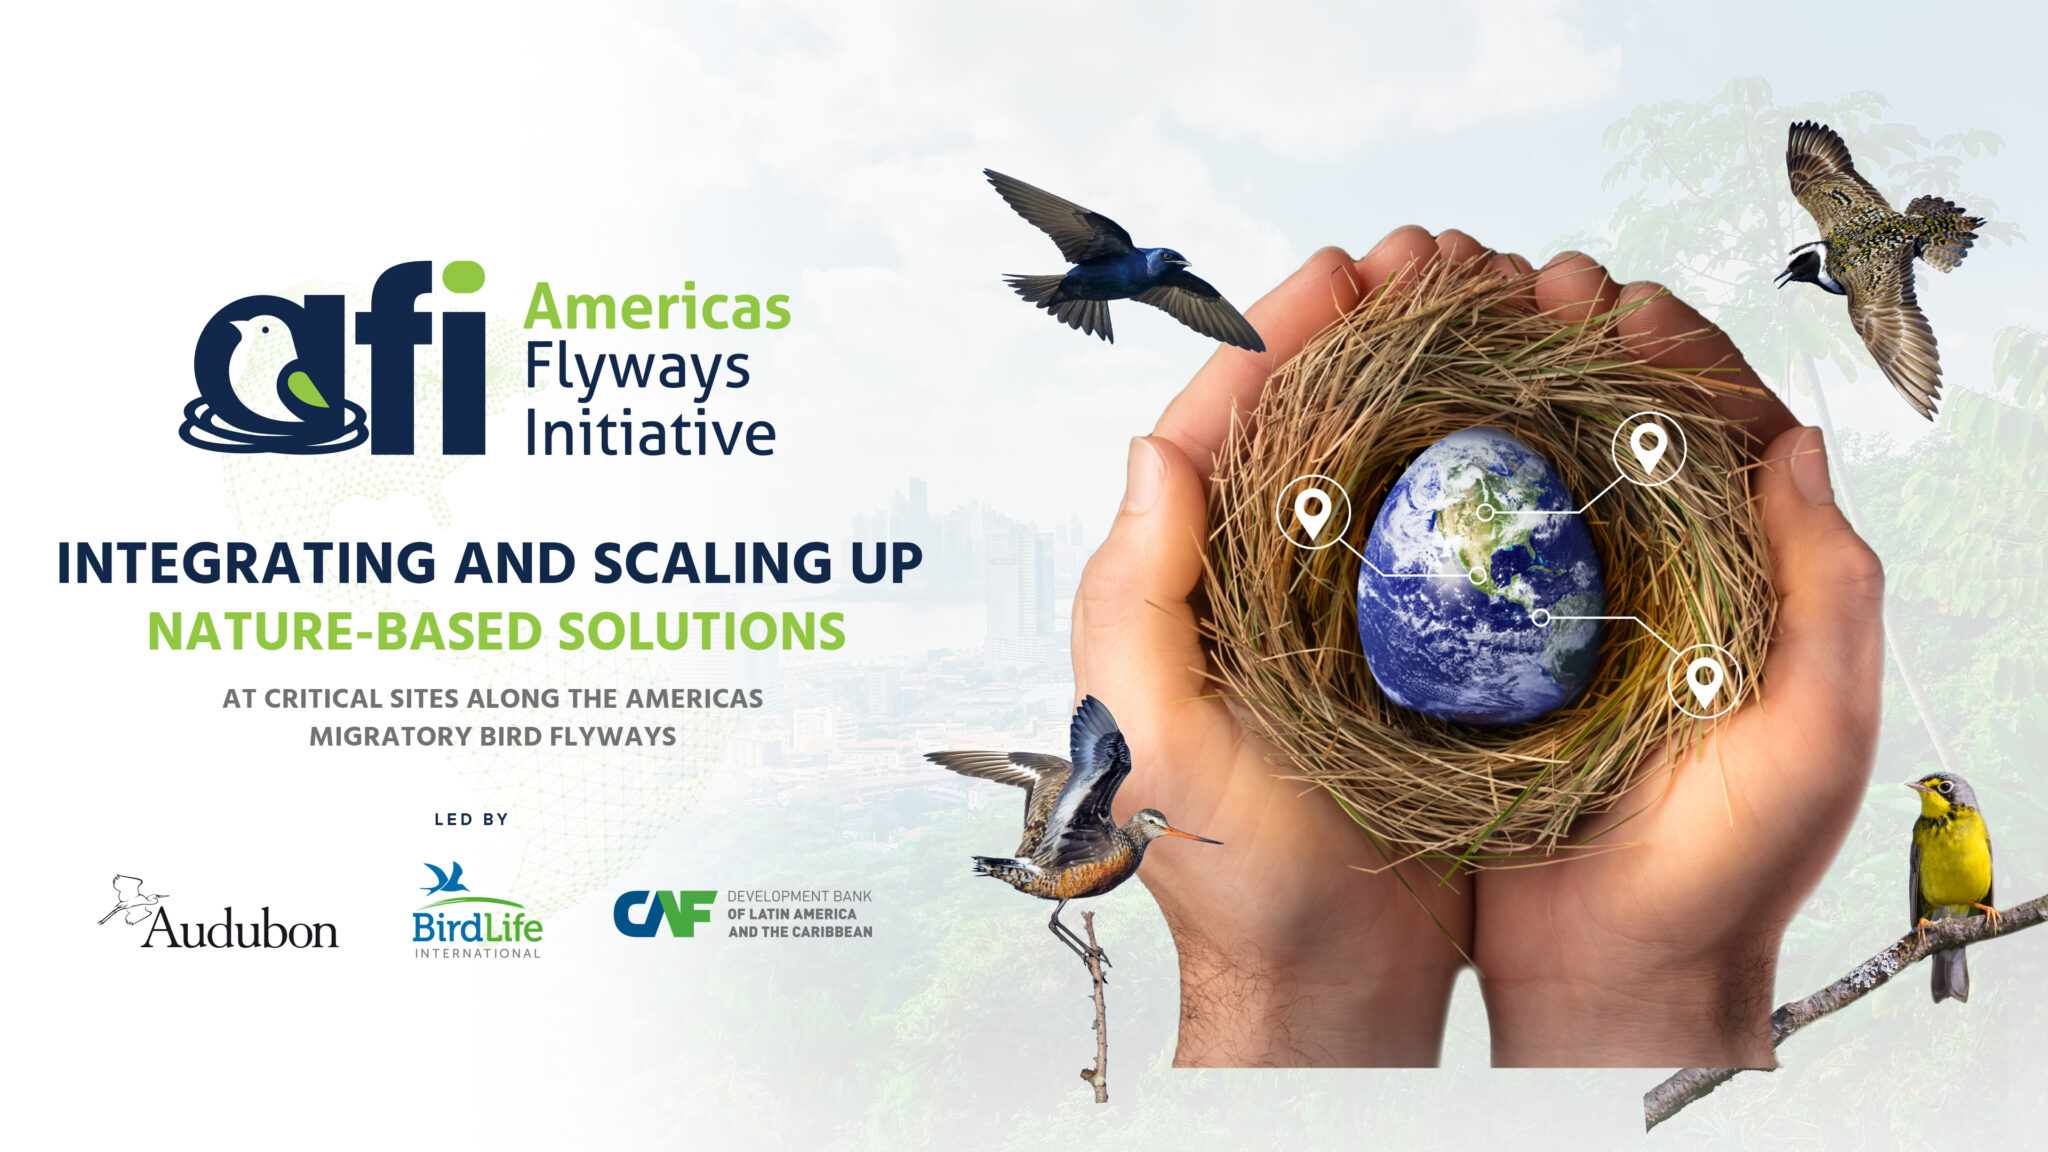 Lanzamiento de la Iniciativa Americas Flyways, que invierte miles de millones para salvar aves, paisajes y medios de vida